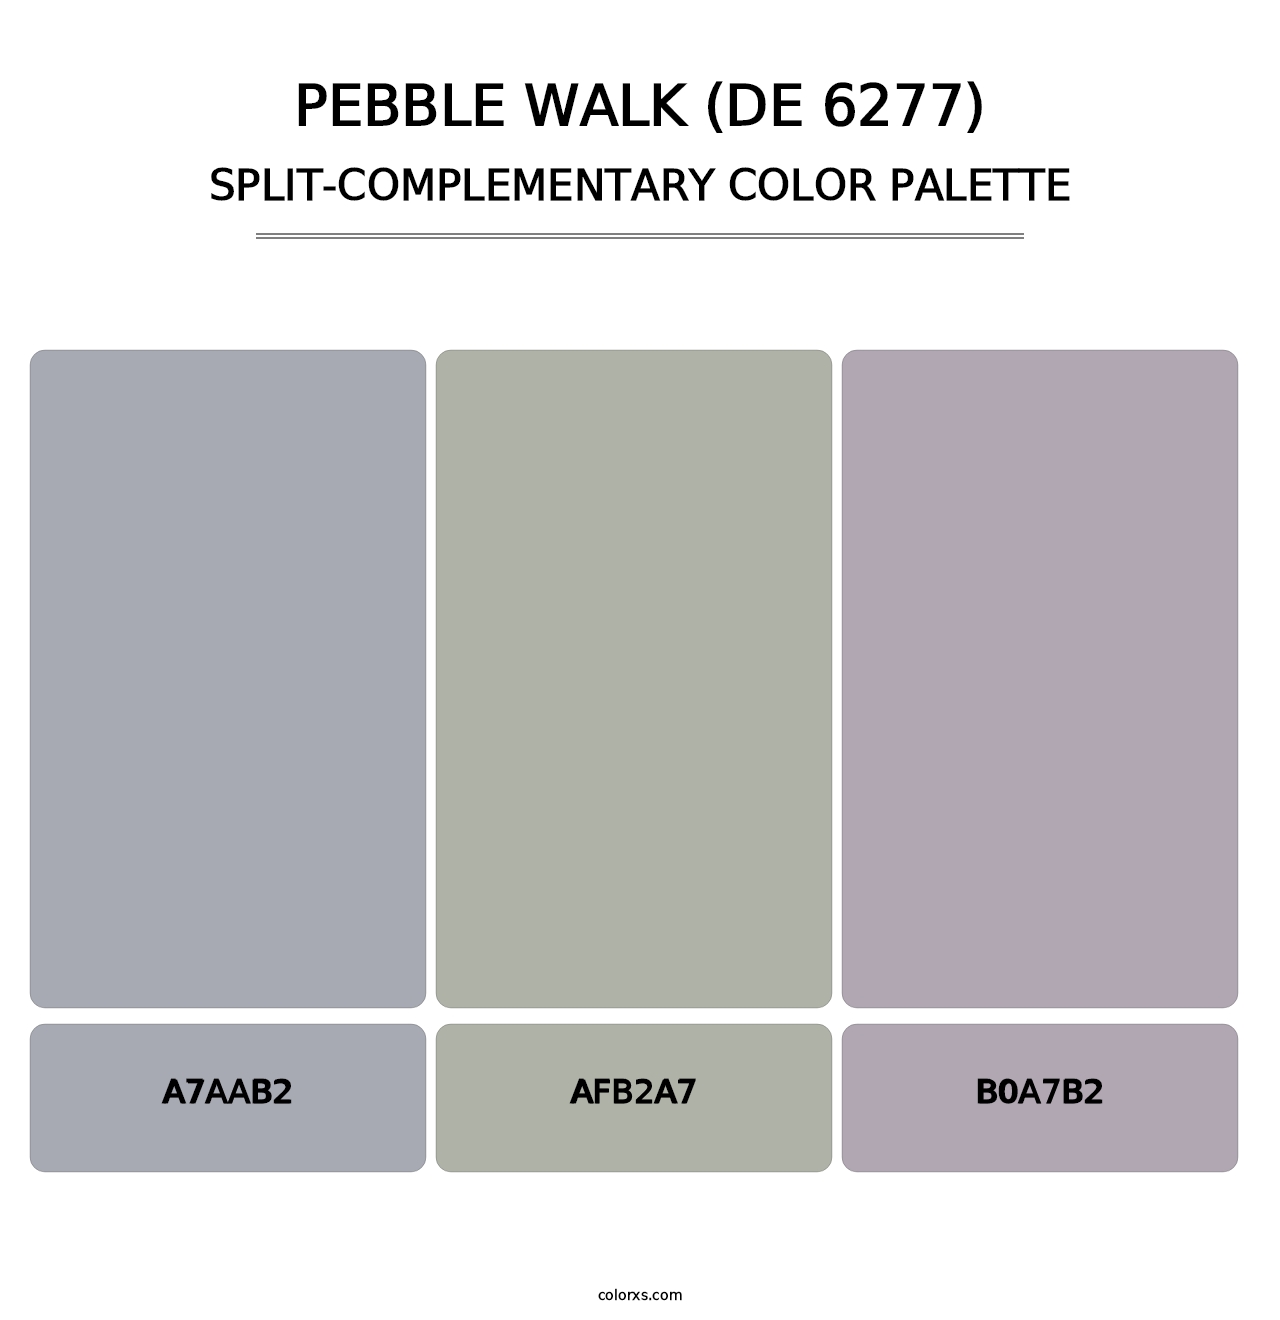 Pebble Walk (DE 6277) - Split-Complementary Color Palette